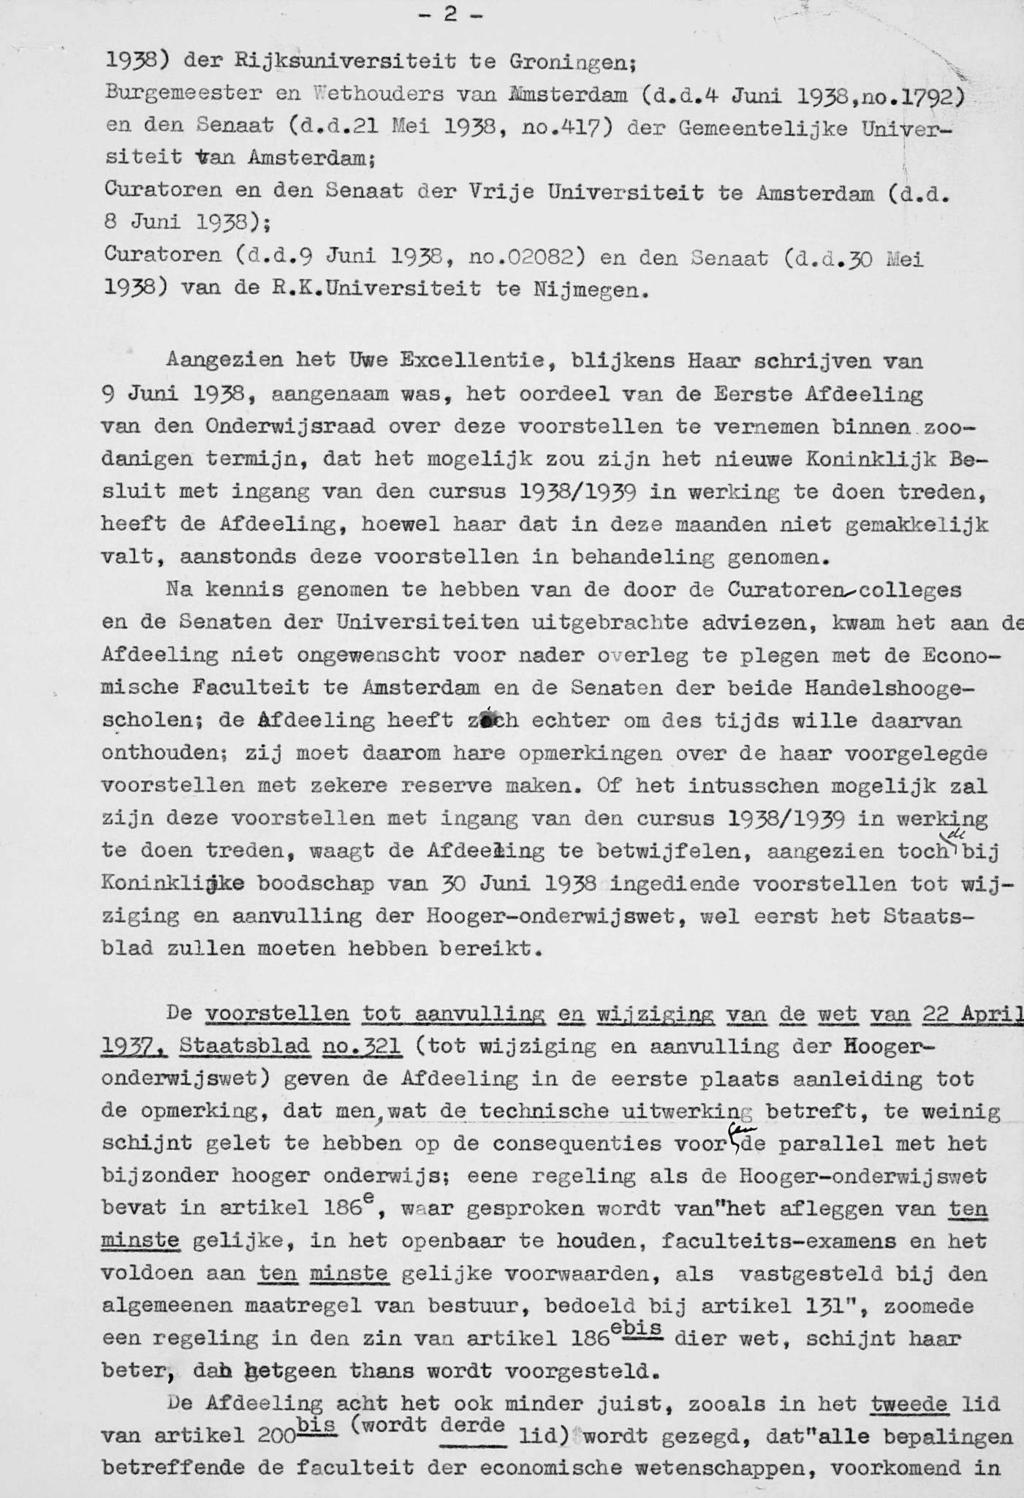 1938) der Rijksuniversiteit te Groningen; V Burgemeester en Wethouders van Imsterdam (d.d.4 Juni 1938,no. 1792^ en den Senaat (d.d.21 Mei 1938, no.